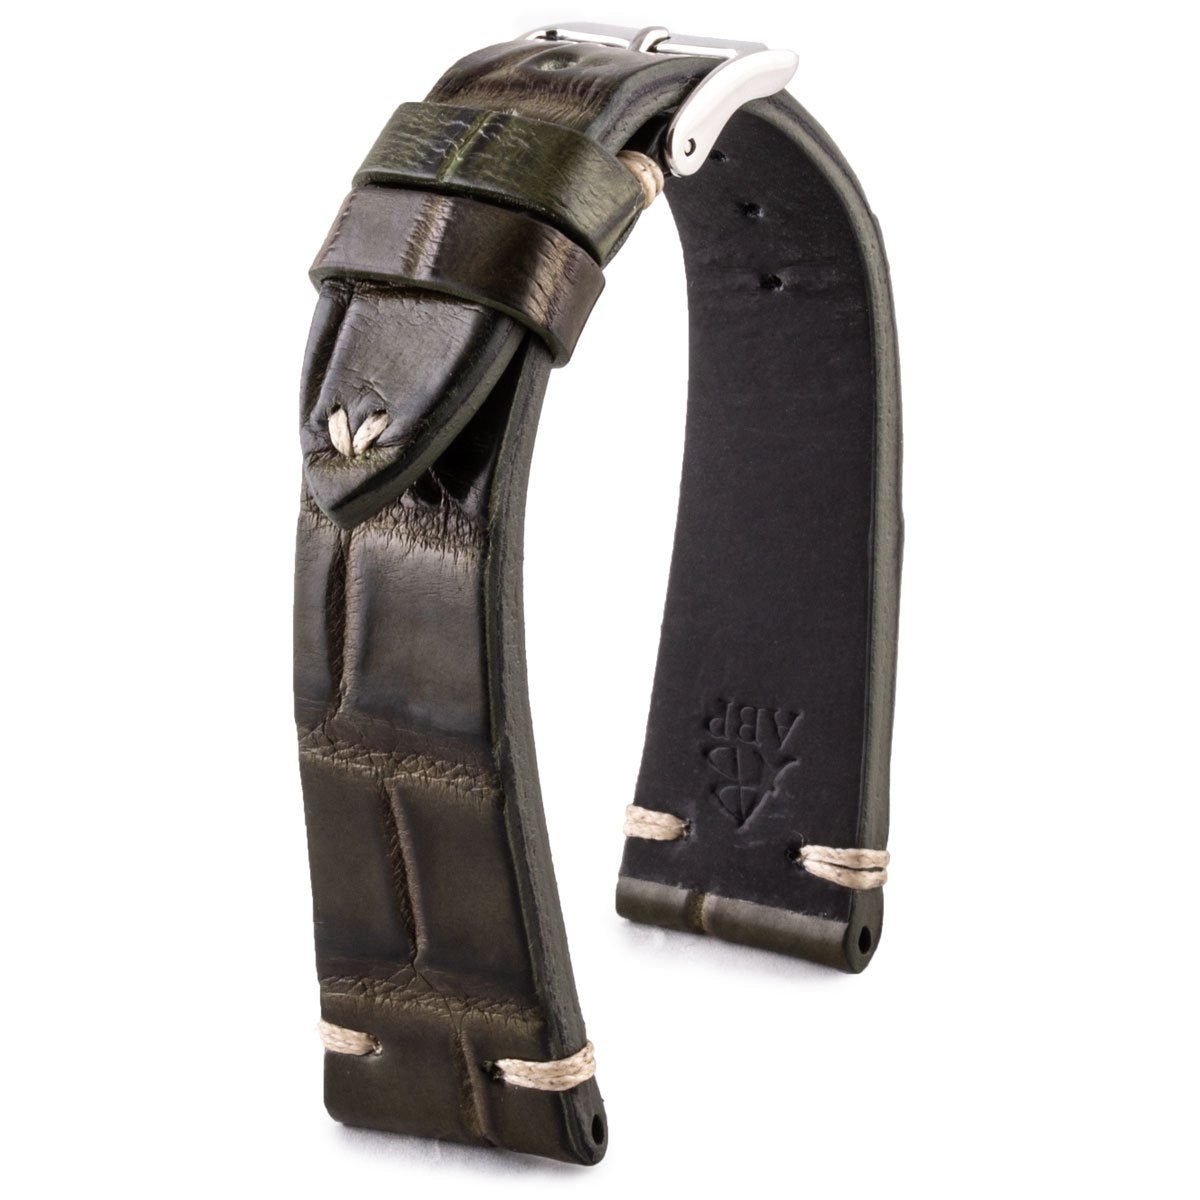 Bracelet Vintage - Bracelet-montre cuir - Alligator (noir, marron, kaki, bordeaux, rouge, violet) - watch band leather strap - ABP Concept -